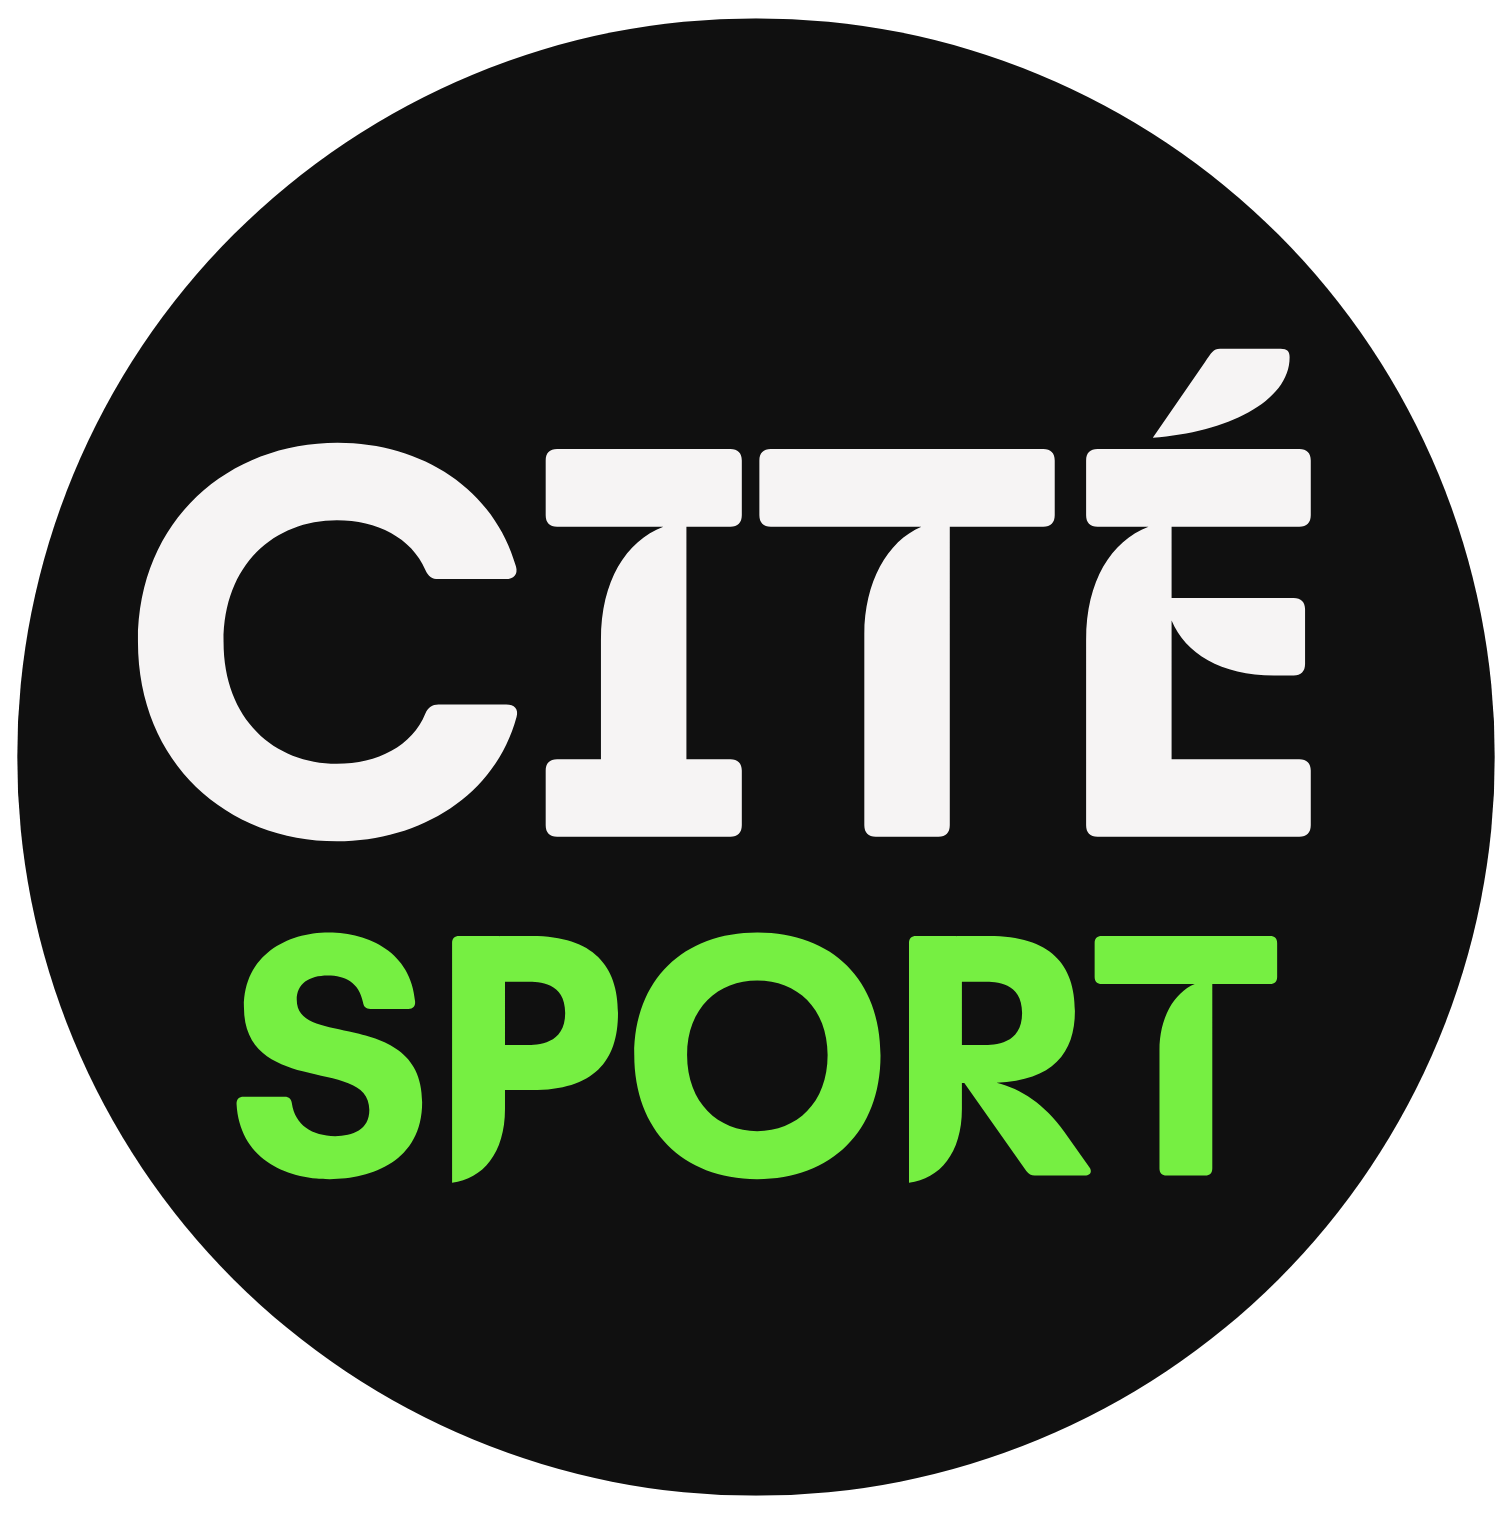 Cité24 Sport